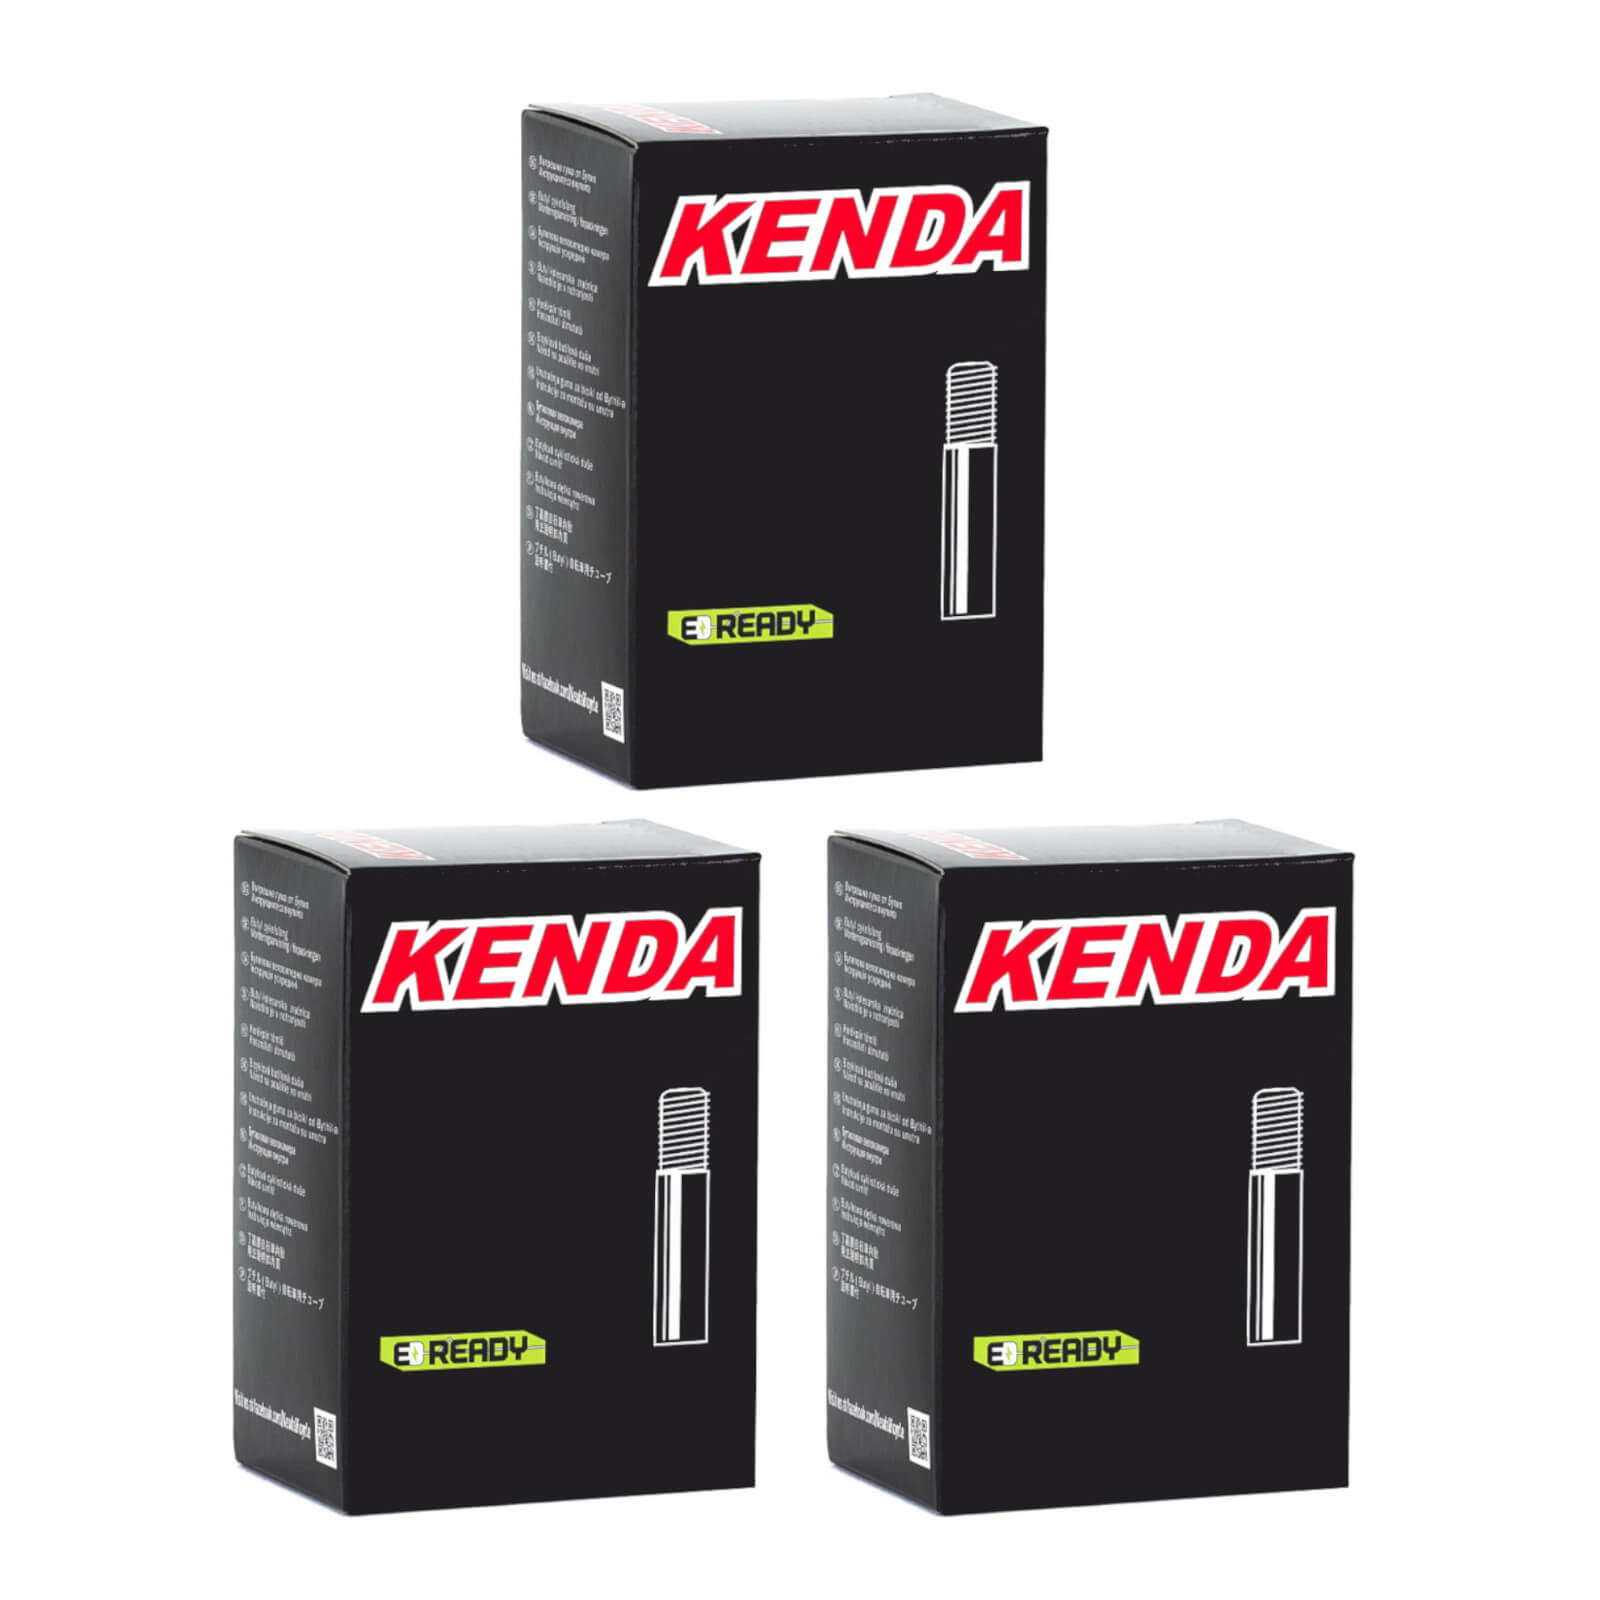 Kenda 26x1.5-1.75" 26 Inch Schrader Valve Bike Inner Tube Pack of 3